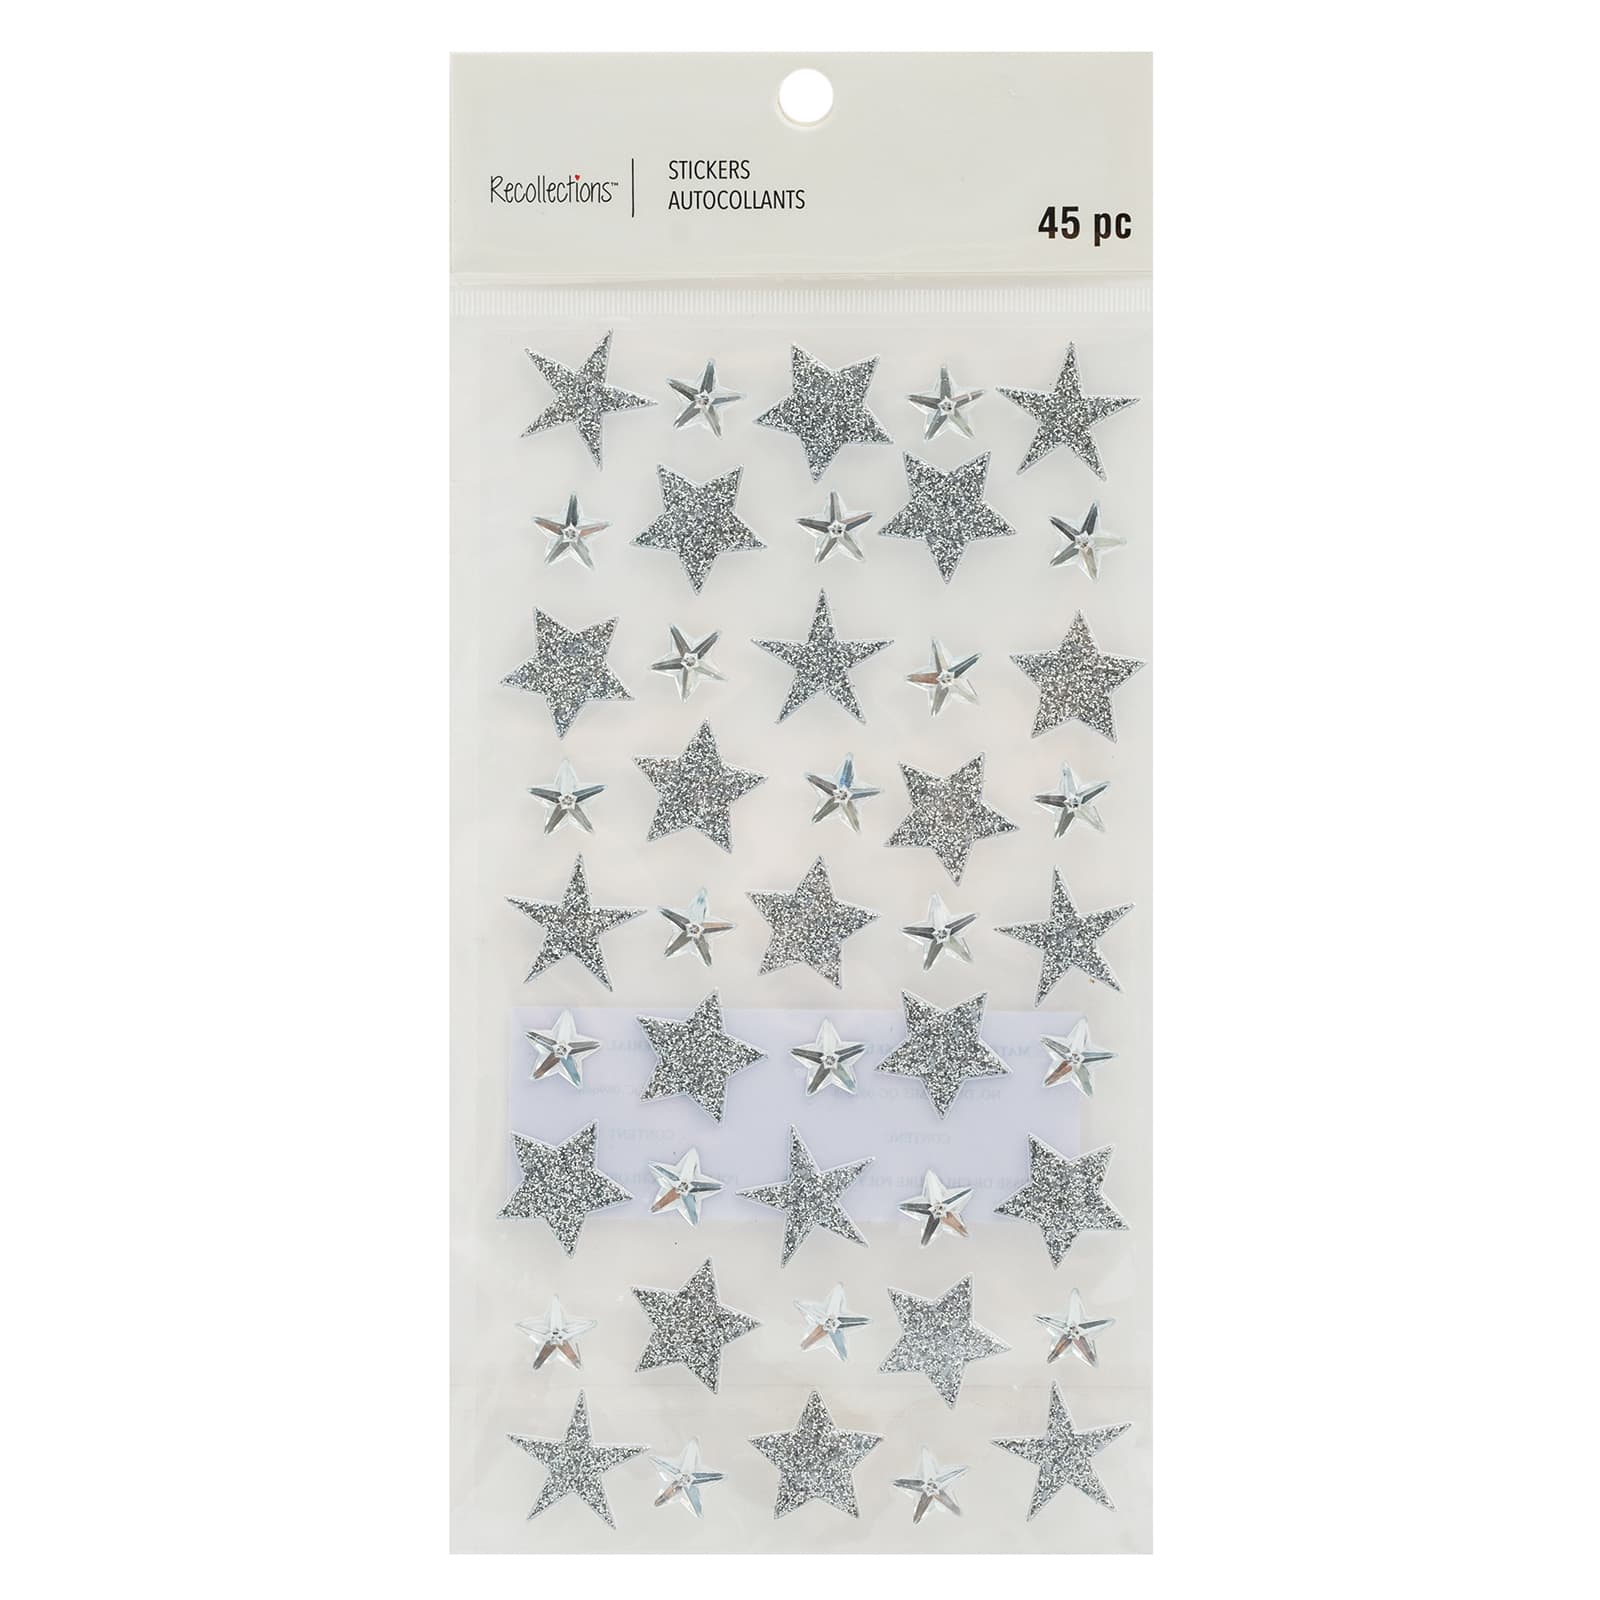 Silver Star Stickers - TownStix